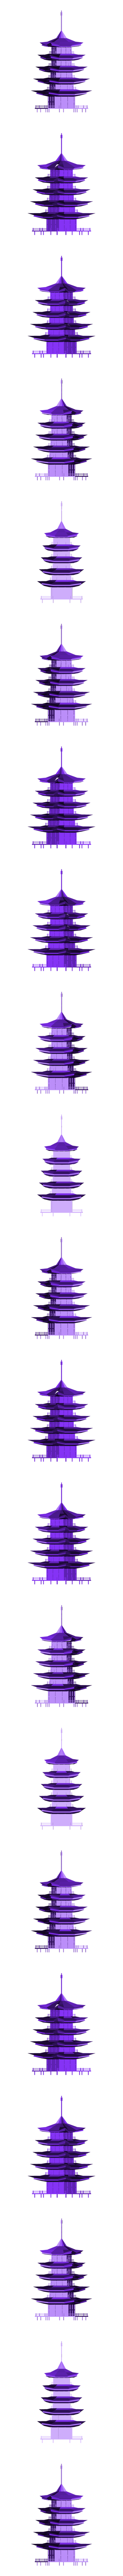 Pagoda.obj Télécharger le fichier OBJ gratuit Pagode • Objet à imprimer en 3D, Colorful3D